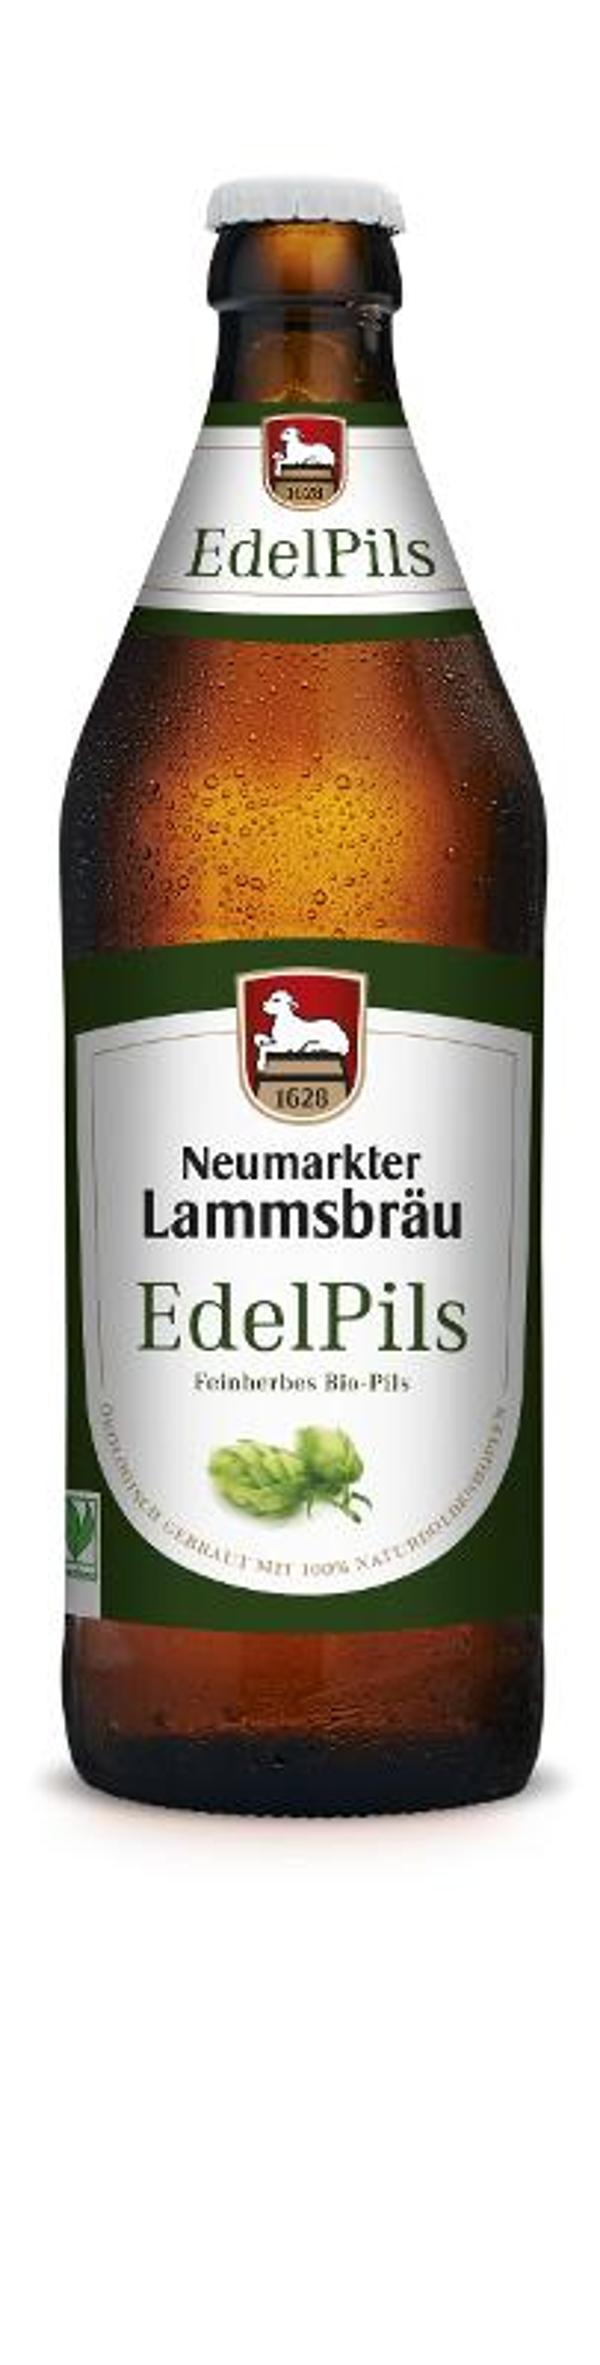 Produktfoto zu Lammsbräu Edelpils - 0,5l